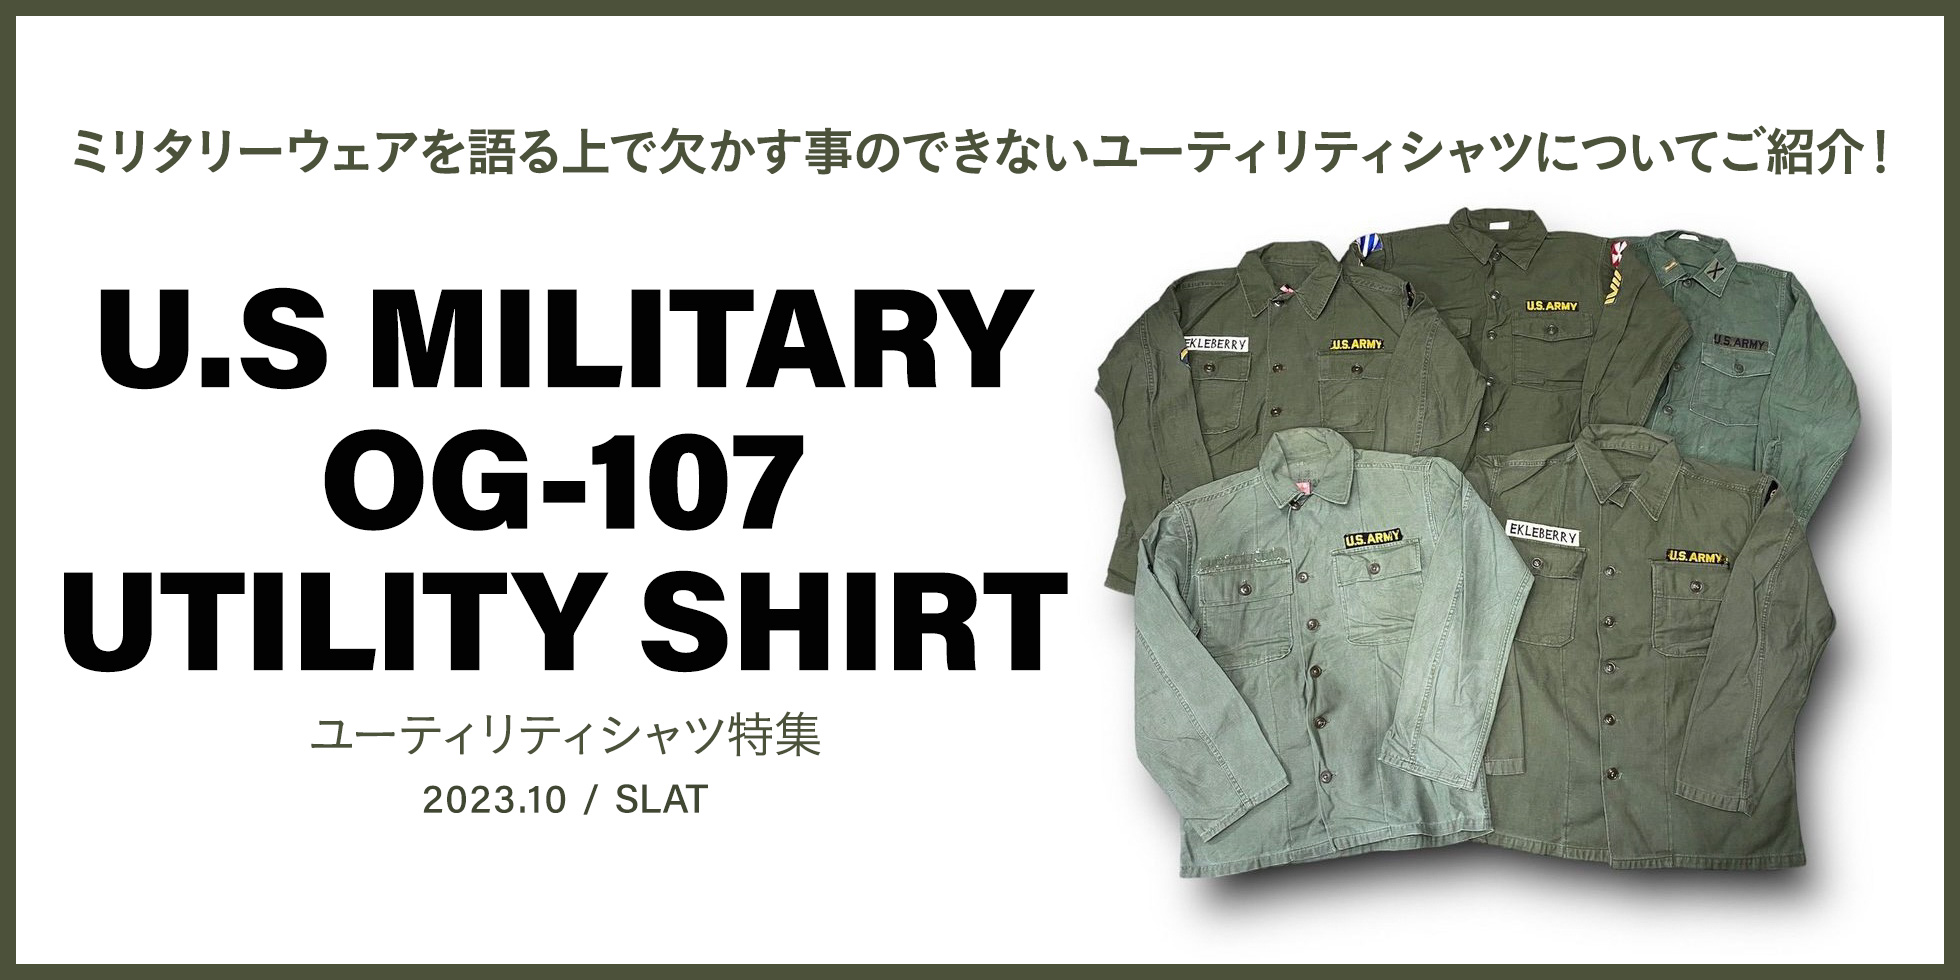 U.S MILITARY OG-107 UTILITY SHIRT 特集